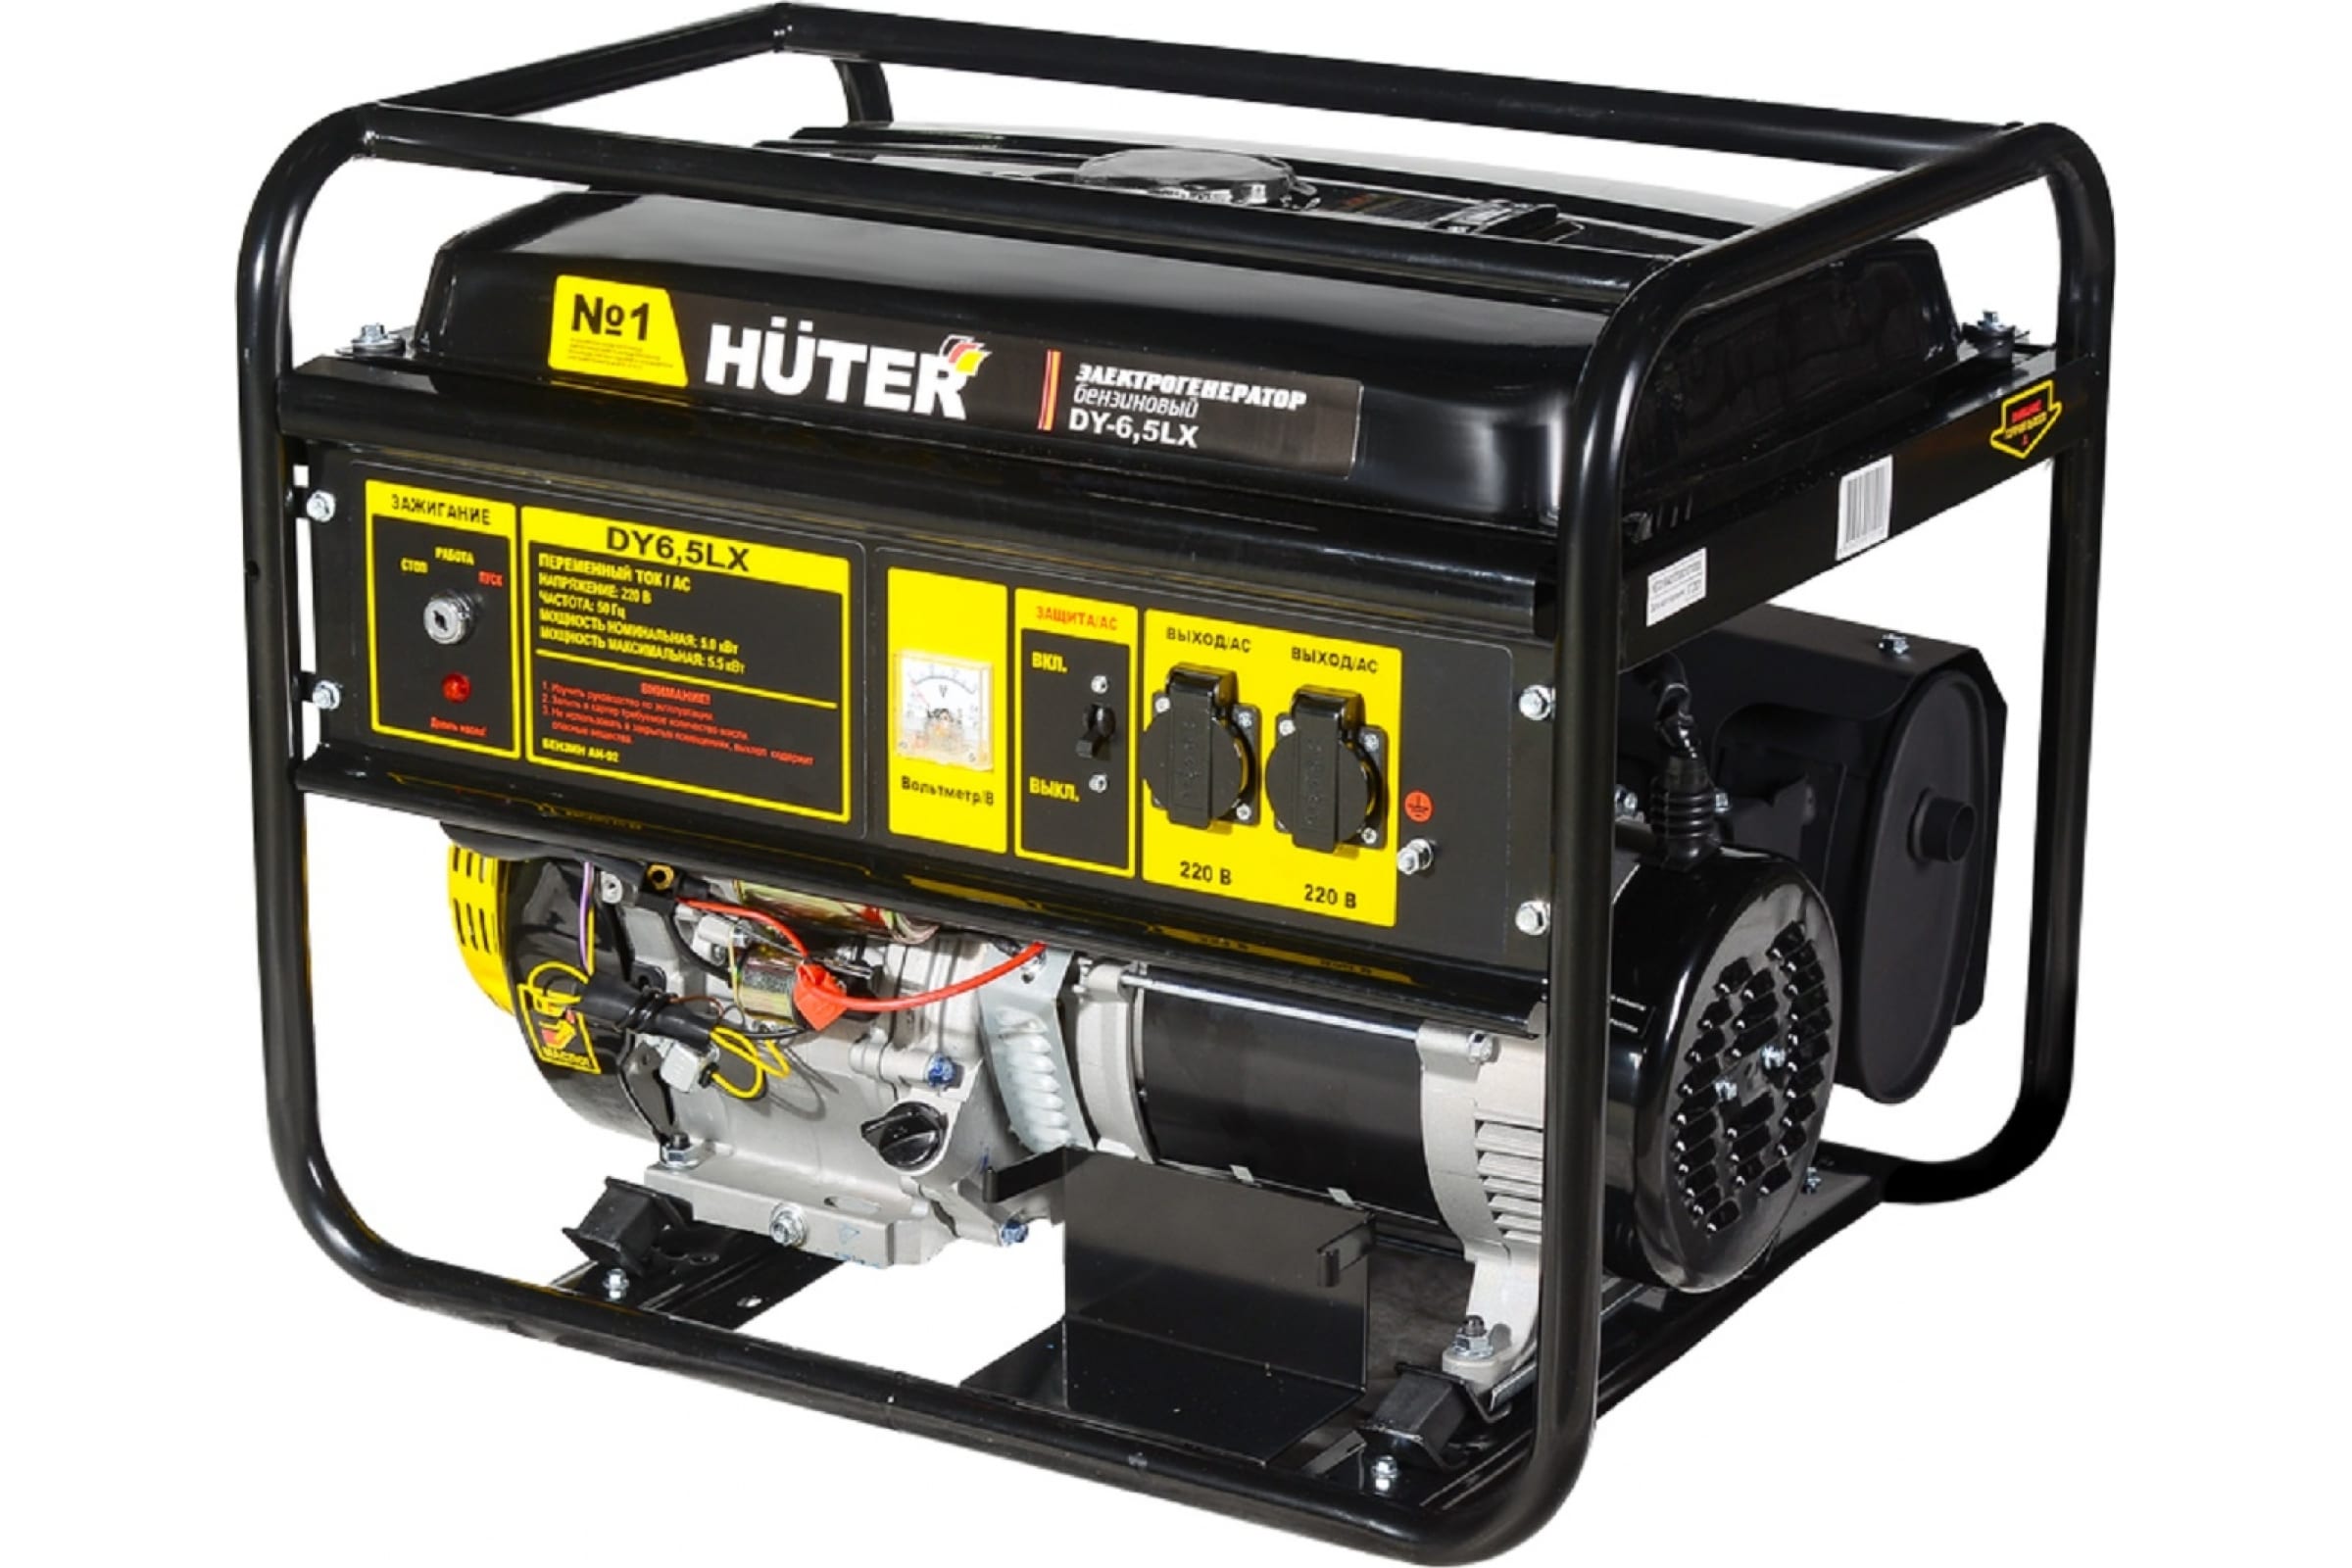 Генератор Huter DY6,5LX-электростартер электрогенератор бензиновый dy3000lx электростартер huter